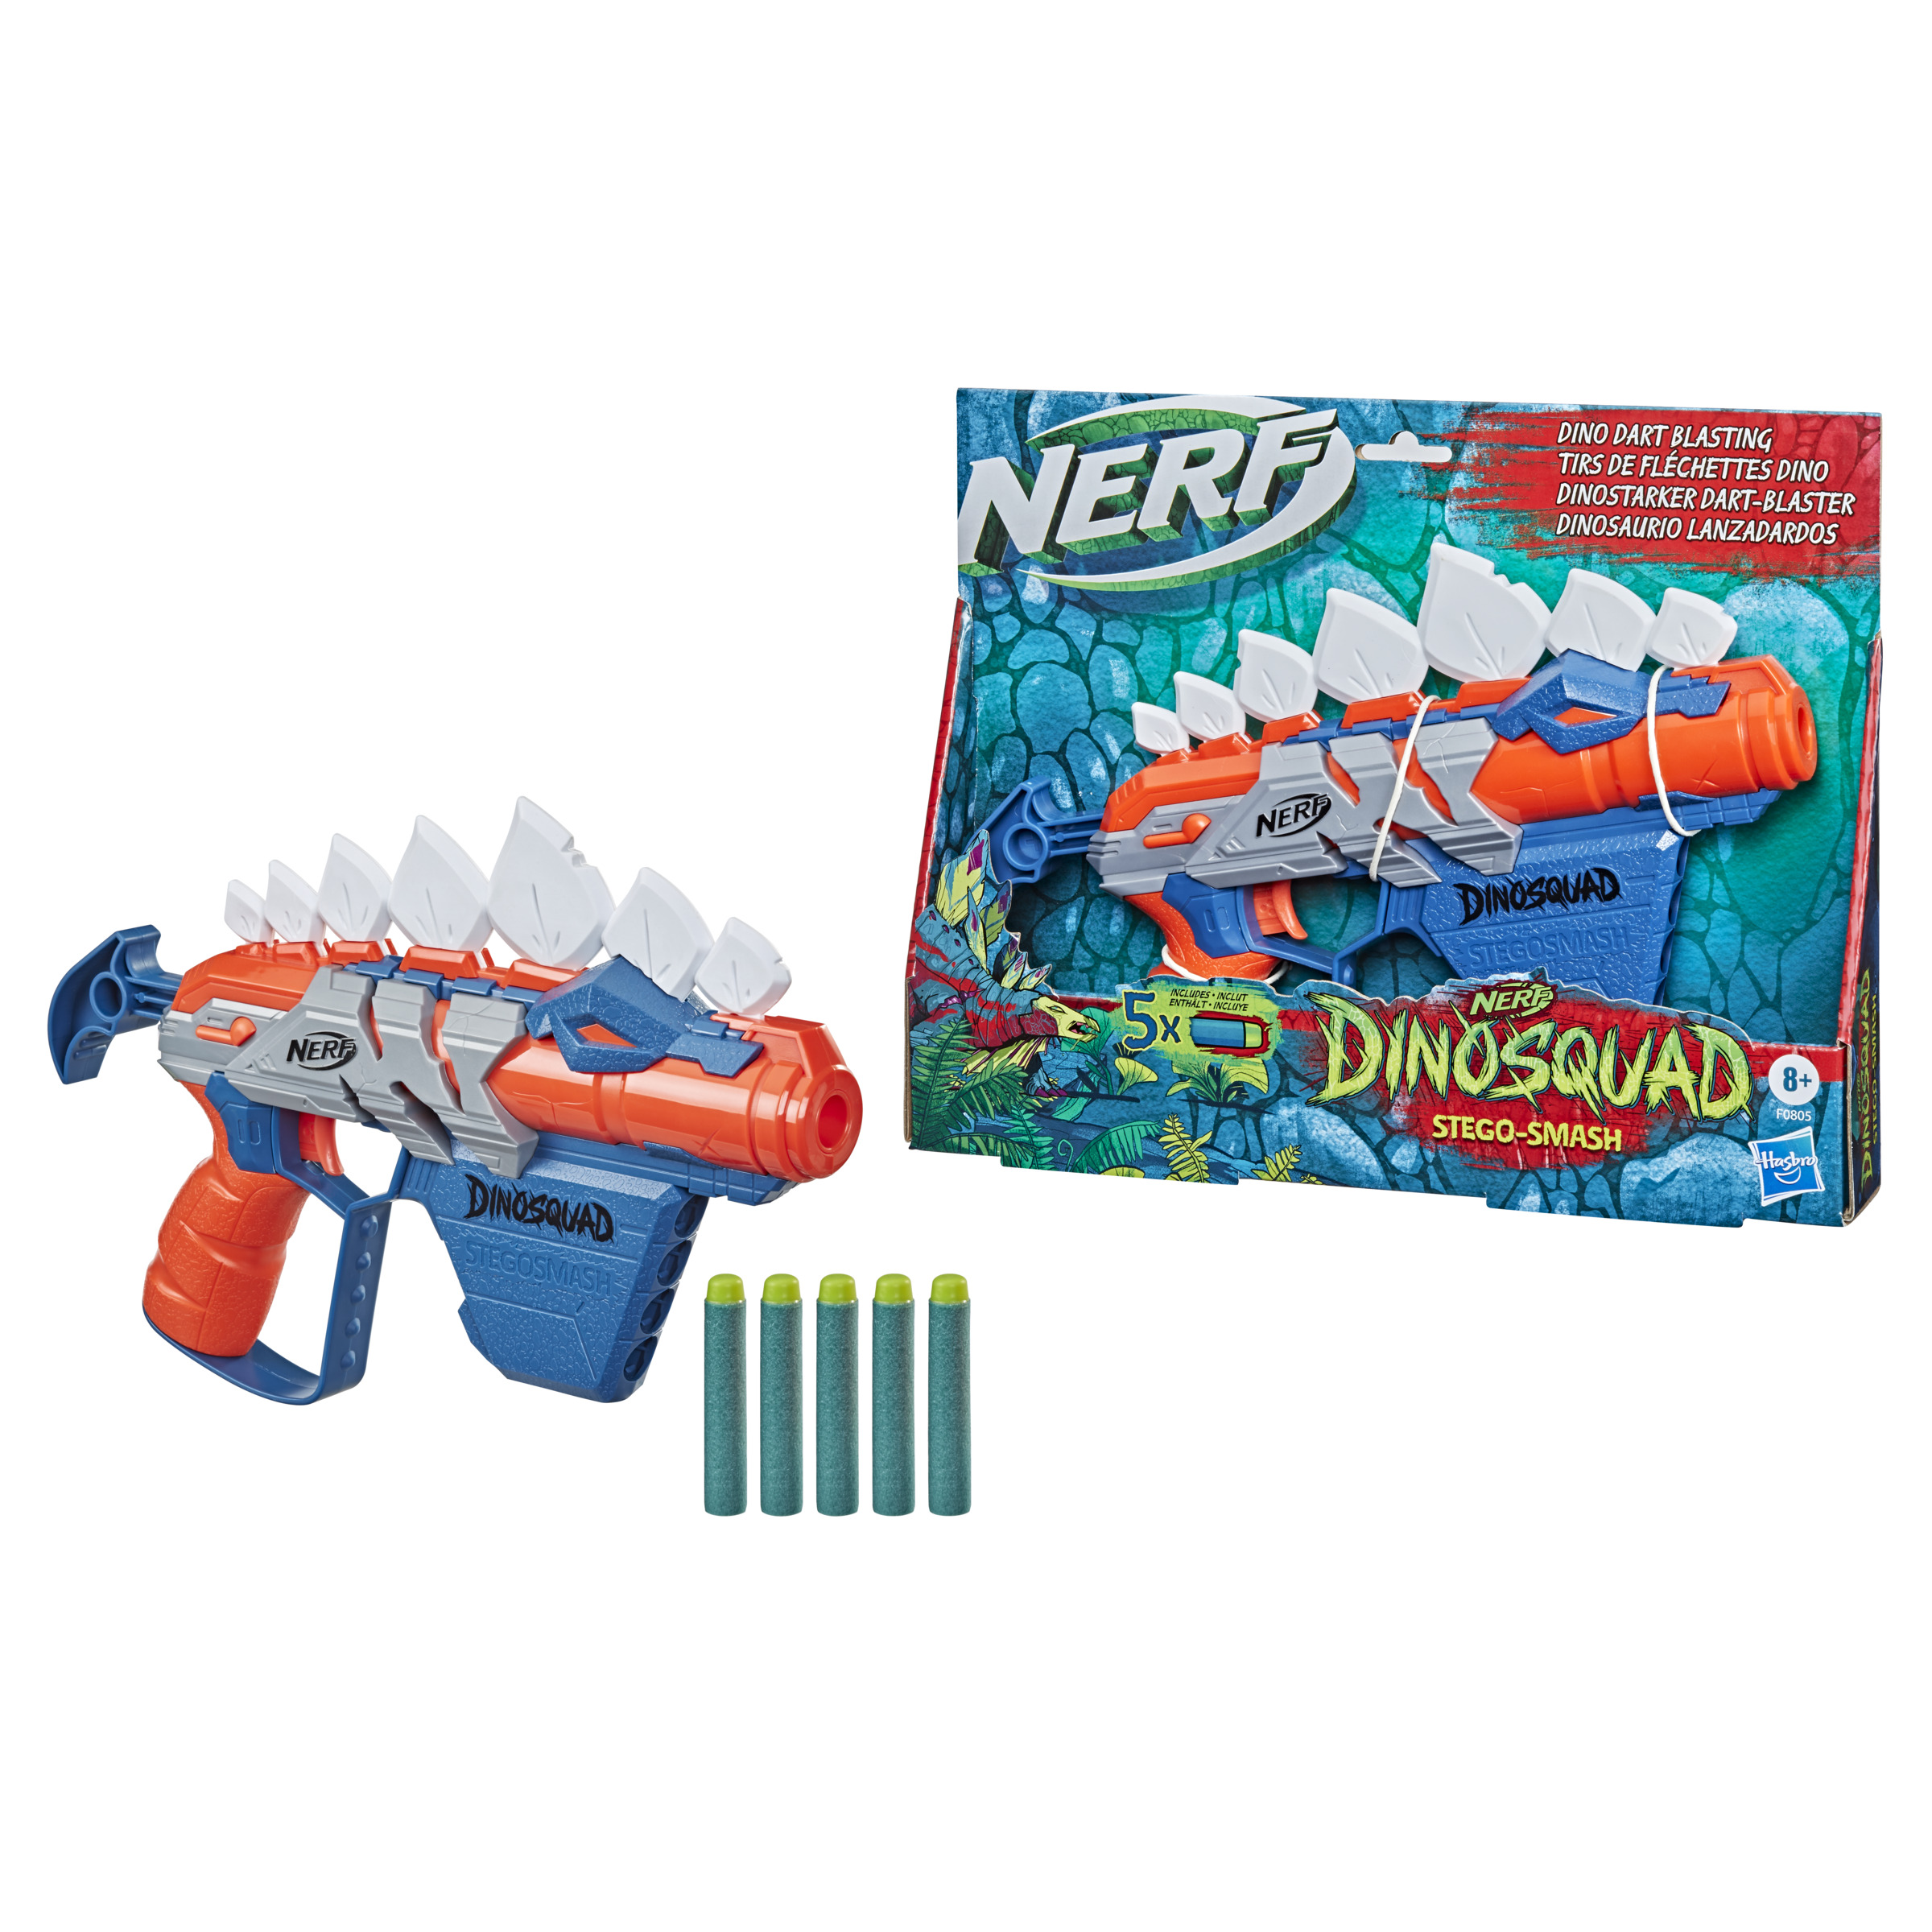 Nerf Stegosmash - Nerf Dinosquad Stegosmash - Nerf  MKP